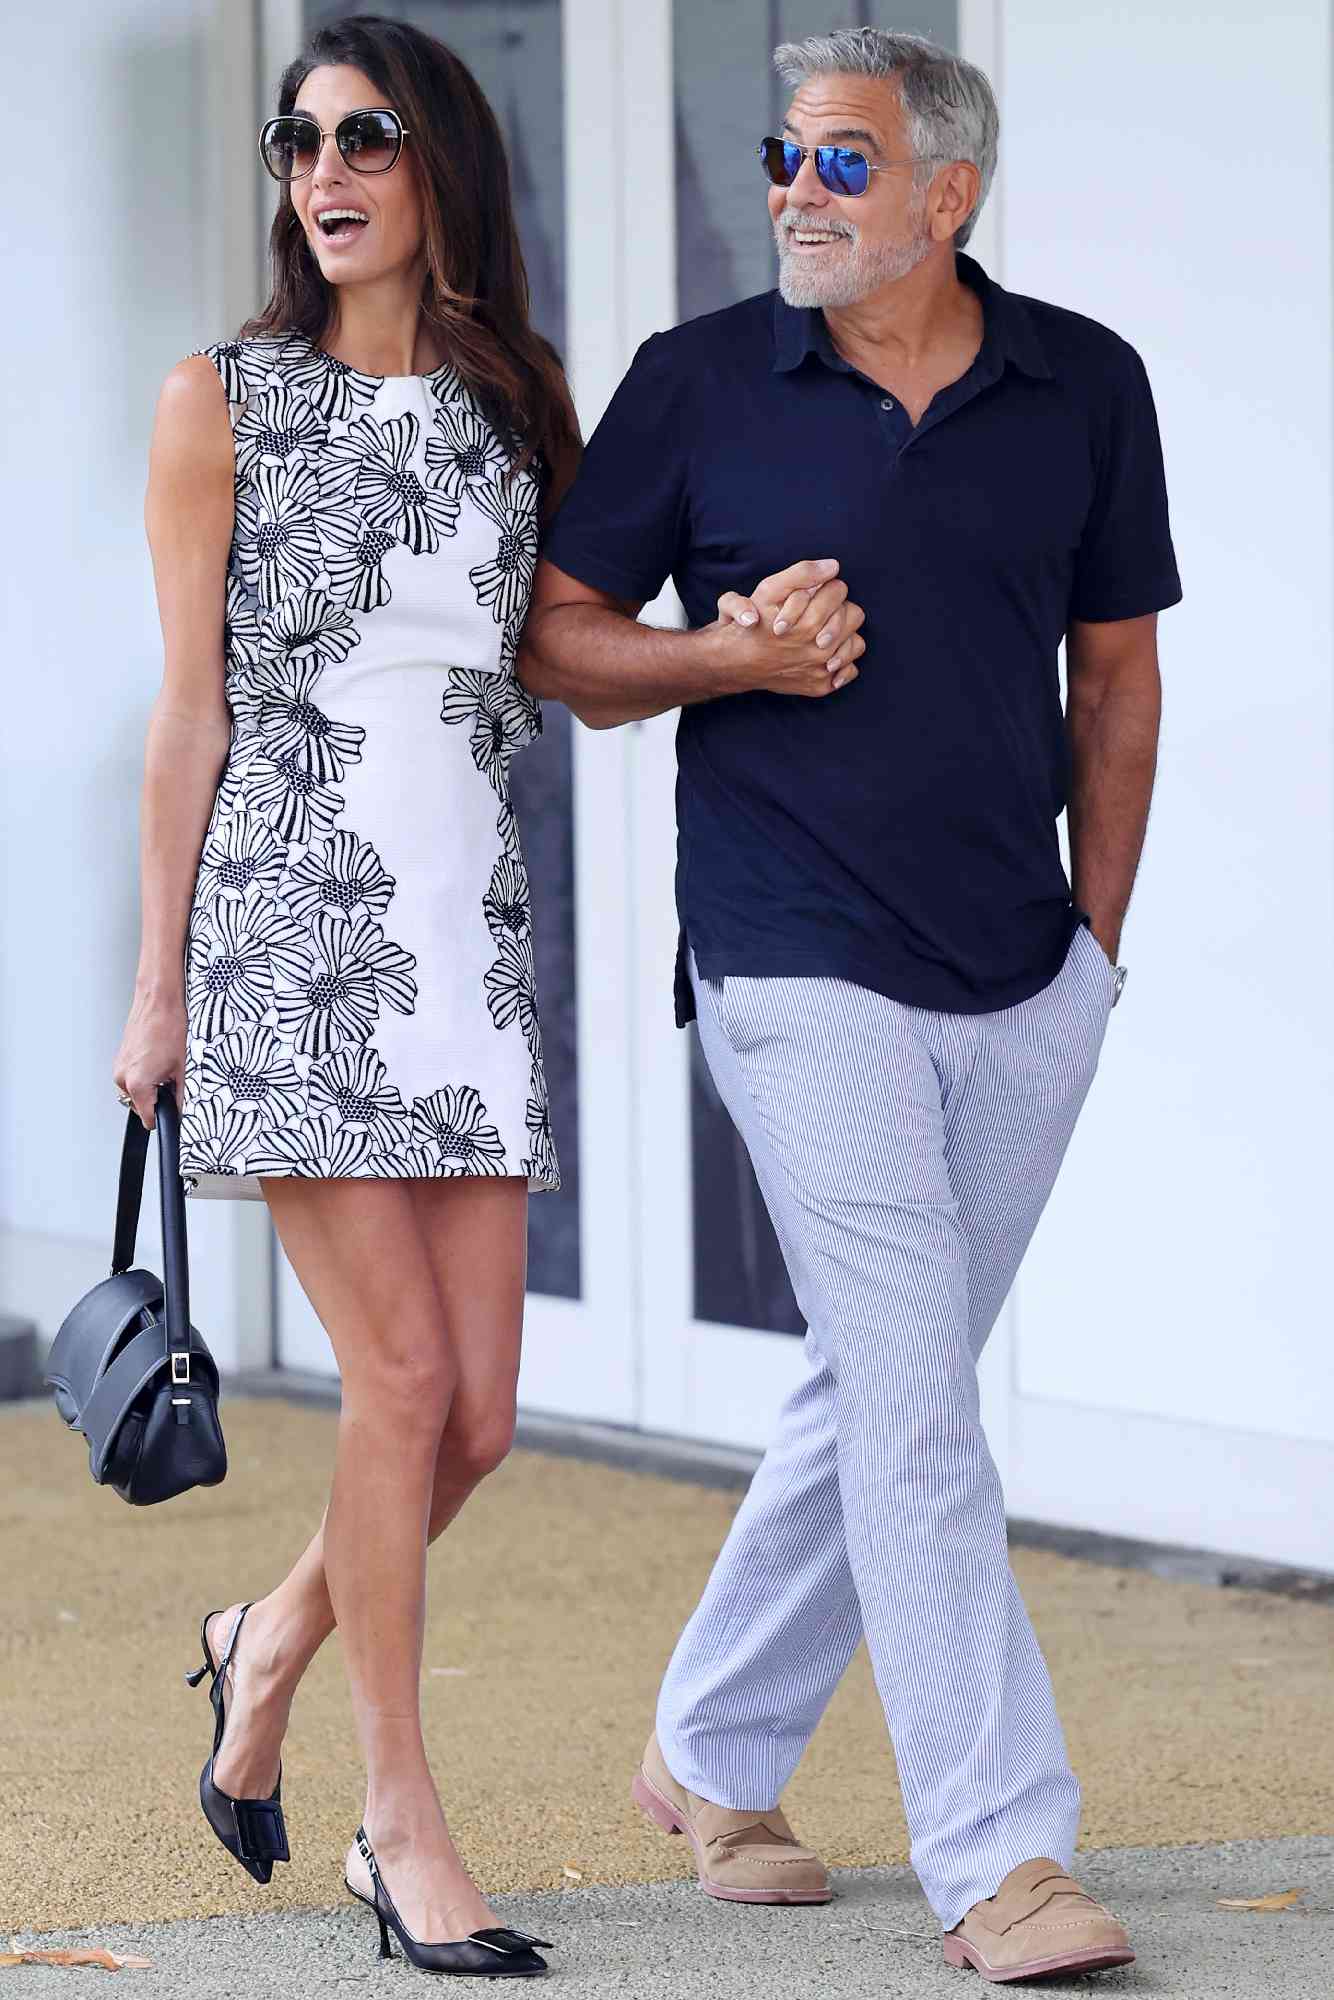 Джордж Клуни с супругой в мини-платье попали в объективы фотографов в Венеции. Топ стильных образов Амаль Клуни